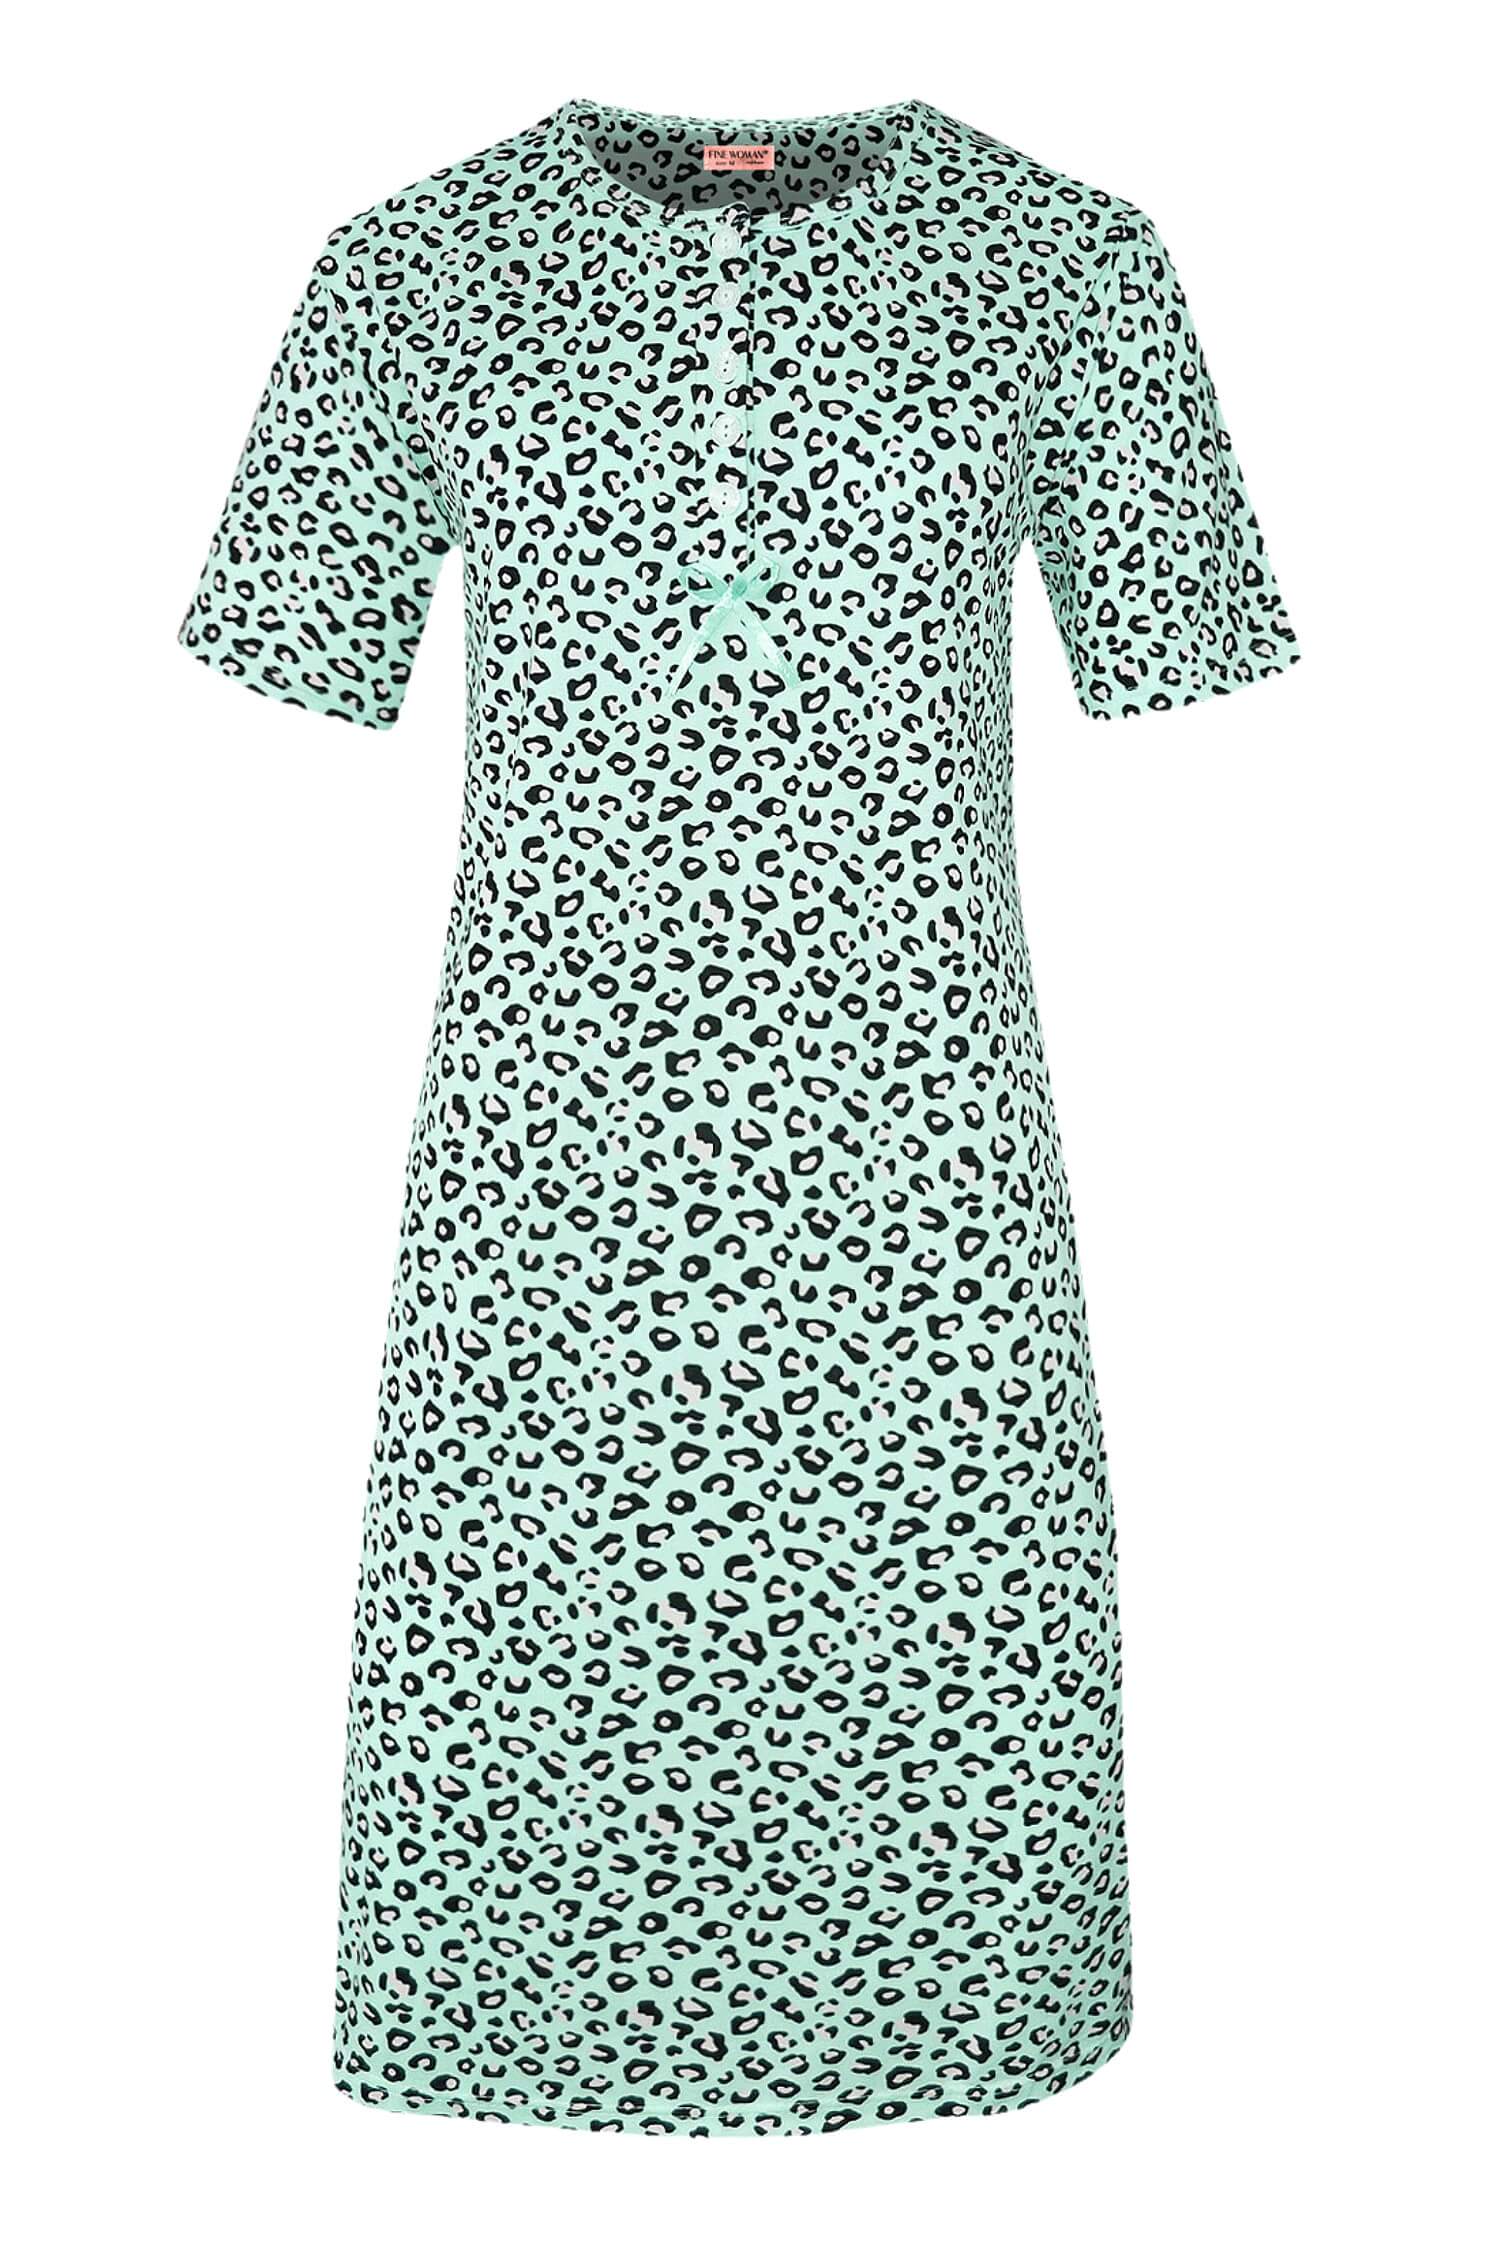 Katarina dámská noční košile leopardí vzor 6529 L světle zelená